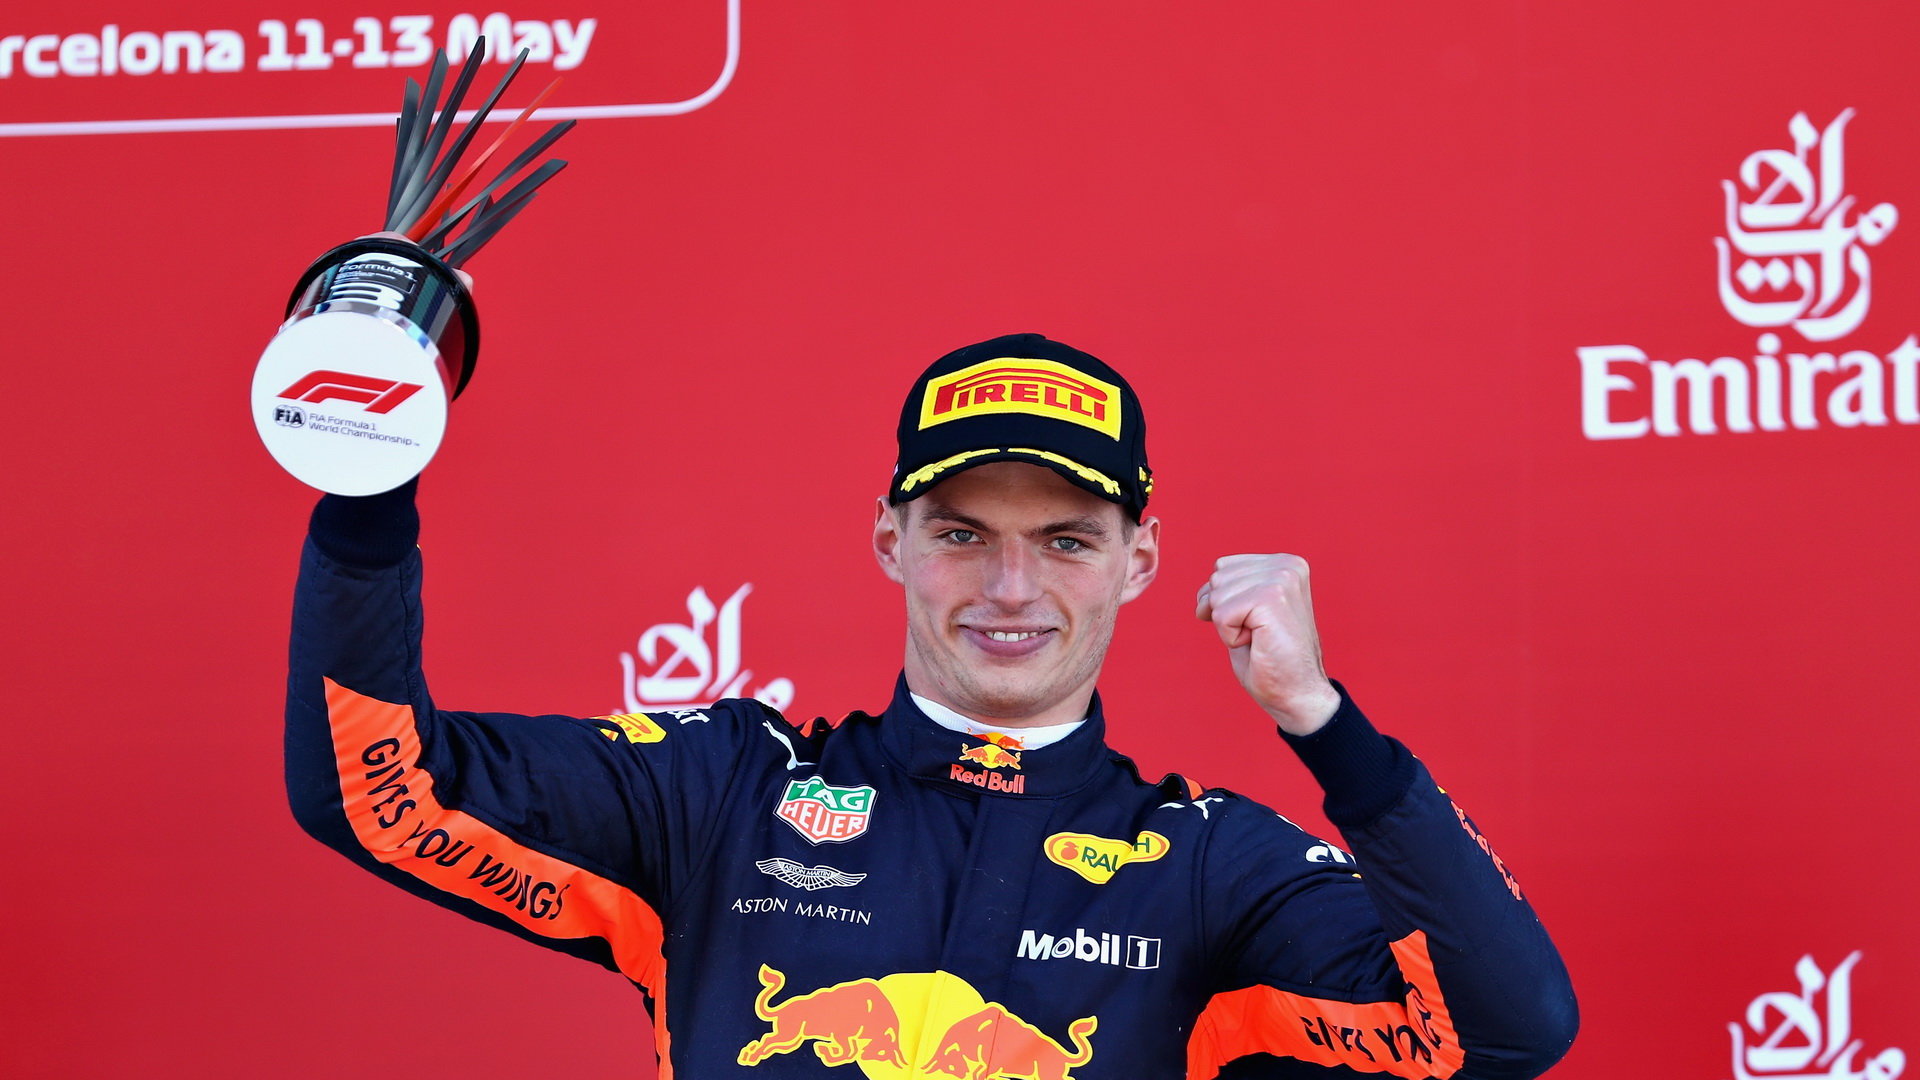 Max Verstappen se svou trofejí na pódiu po závodě ve Španělsku